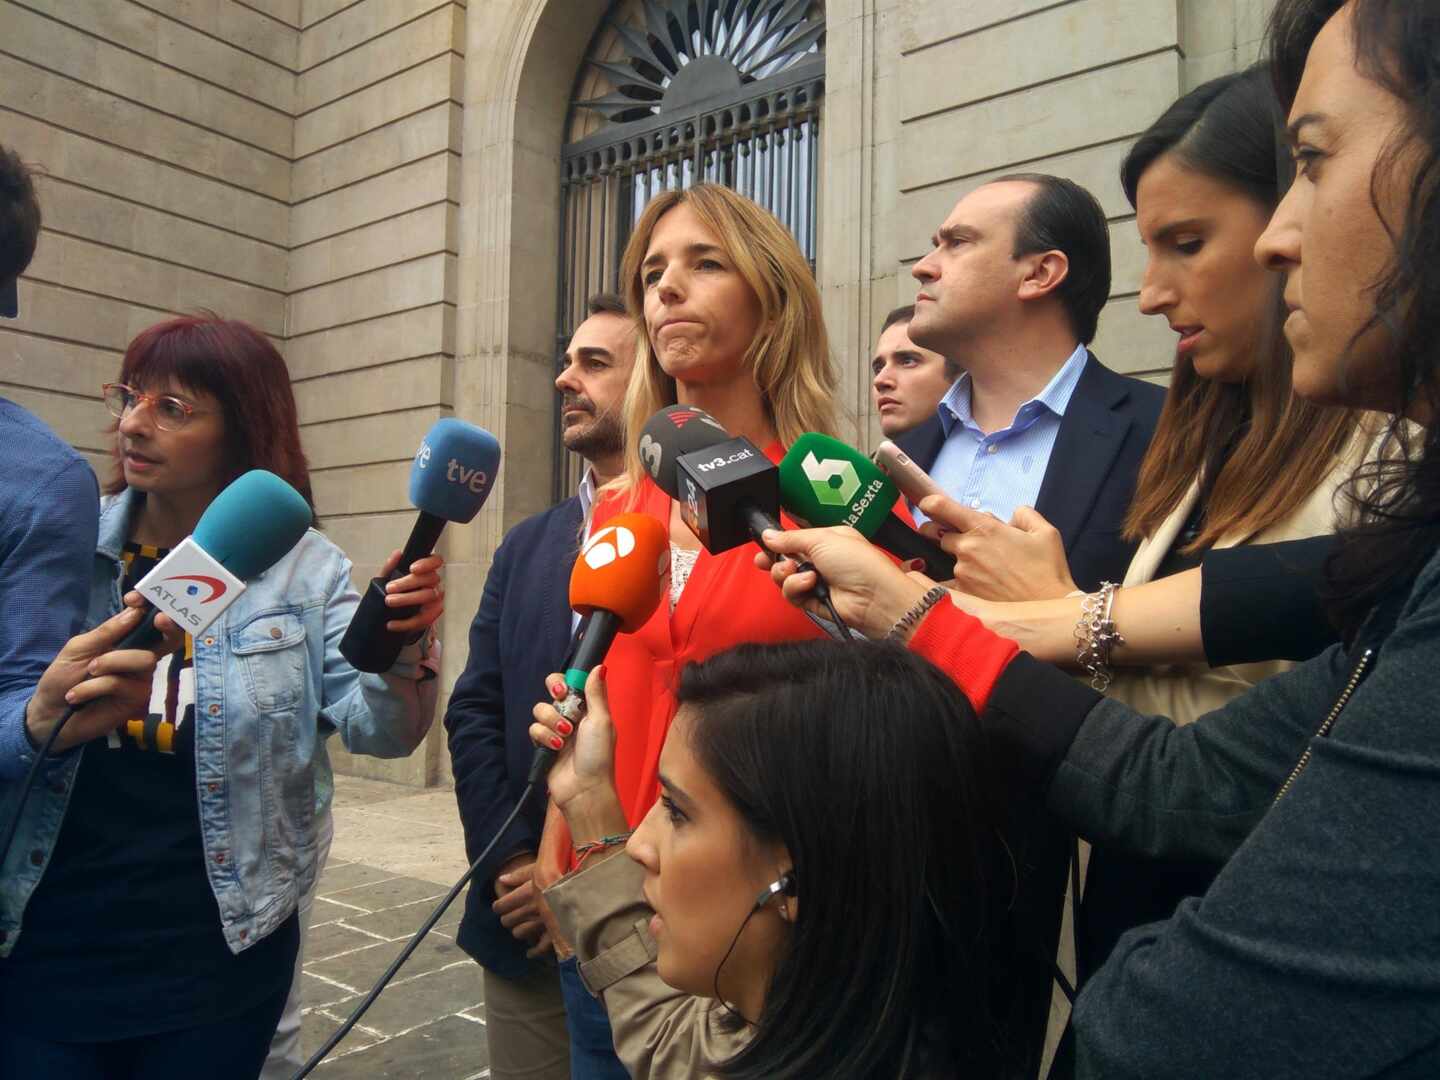 Tensión entre los estibadores y Álvarez de Toledo: "Puta, momia, fascista"